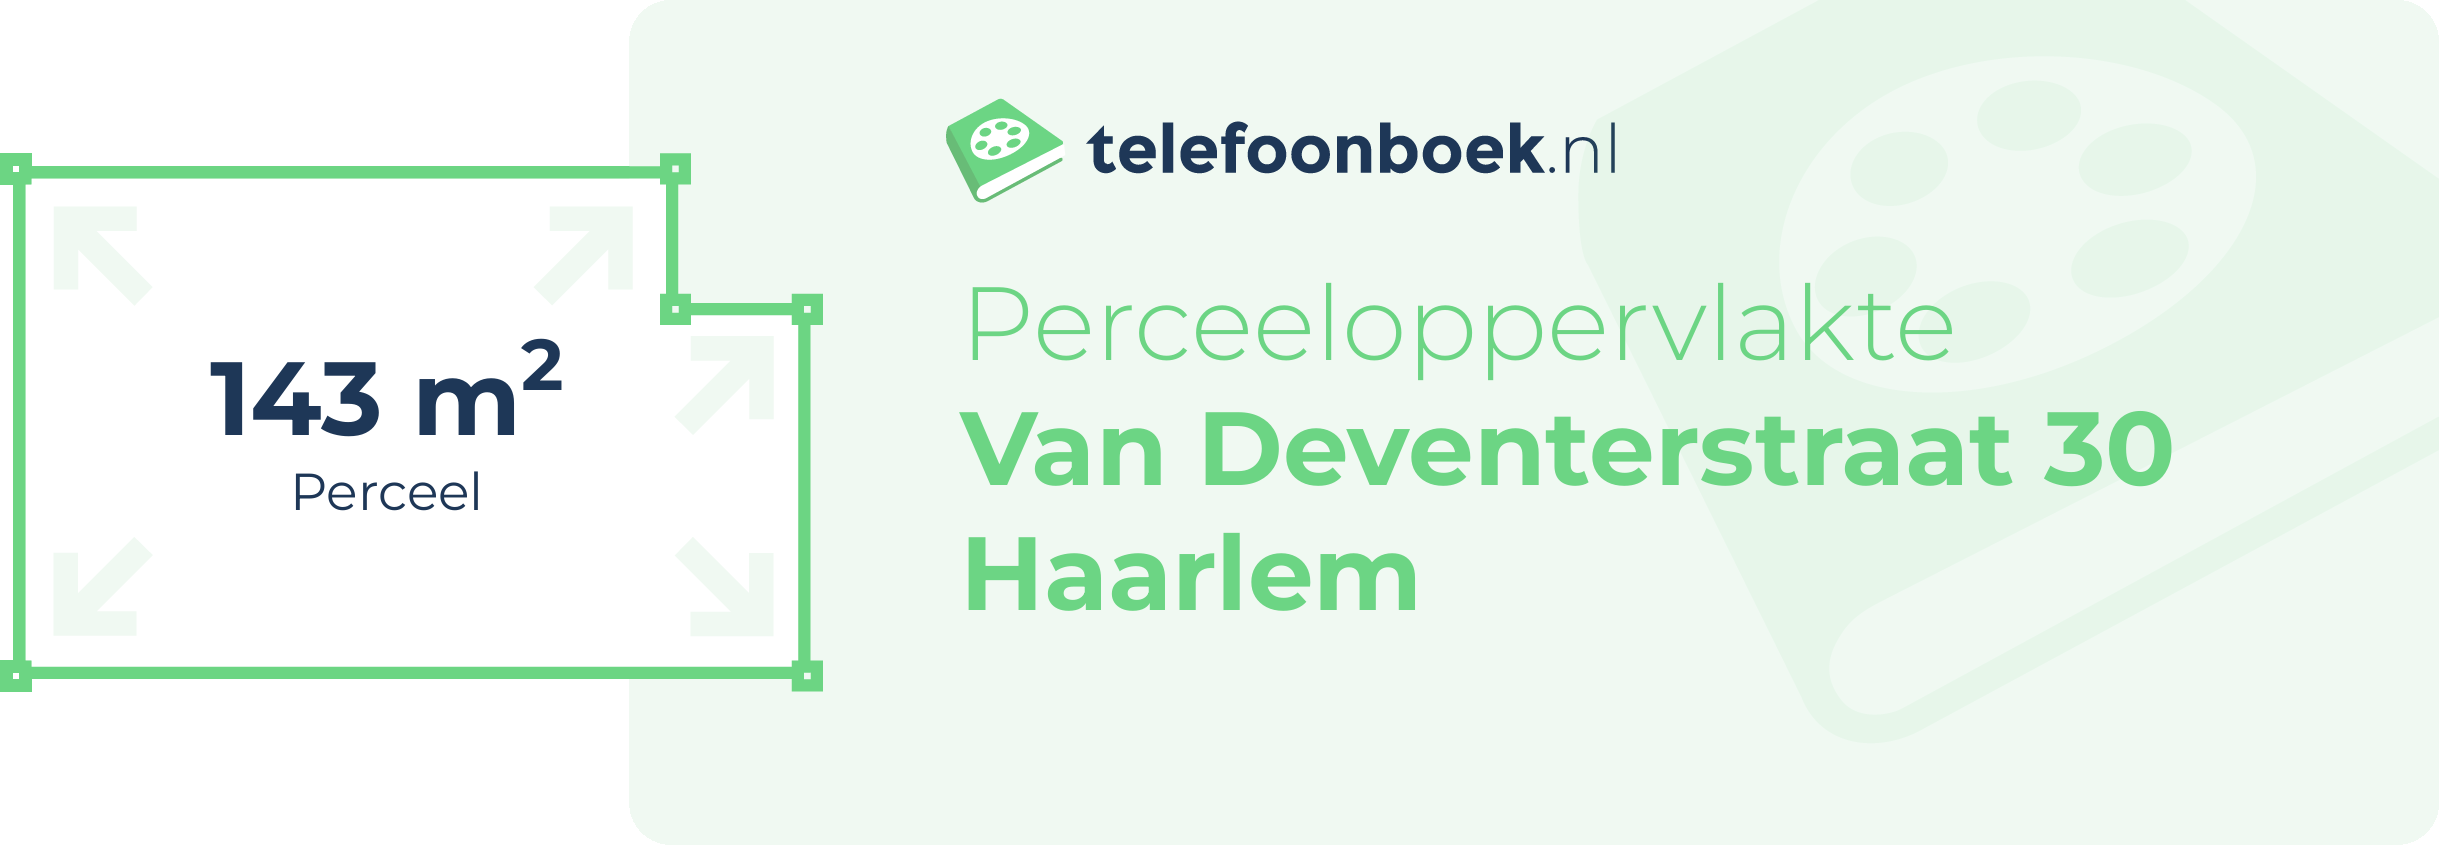 Perceeloppervlakte Van Deventerstraat 30 Haarlem